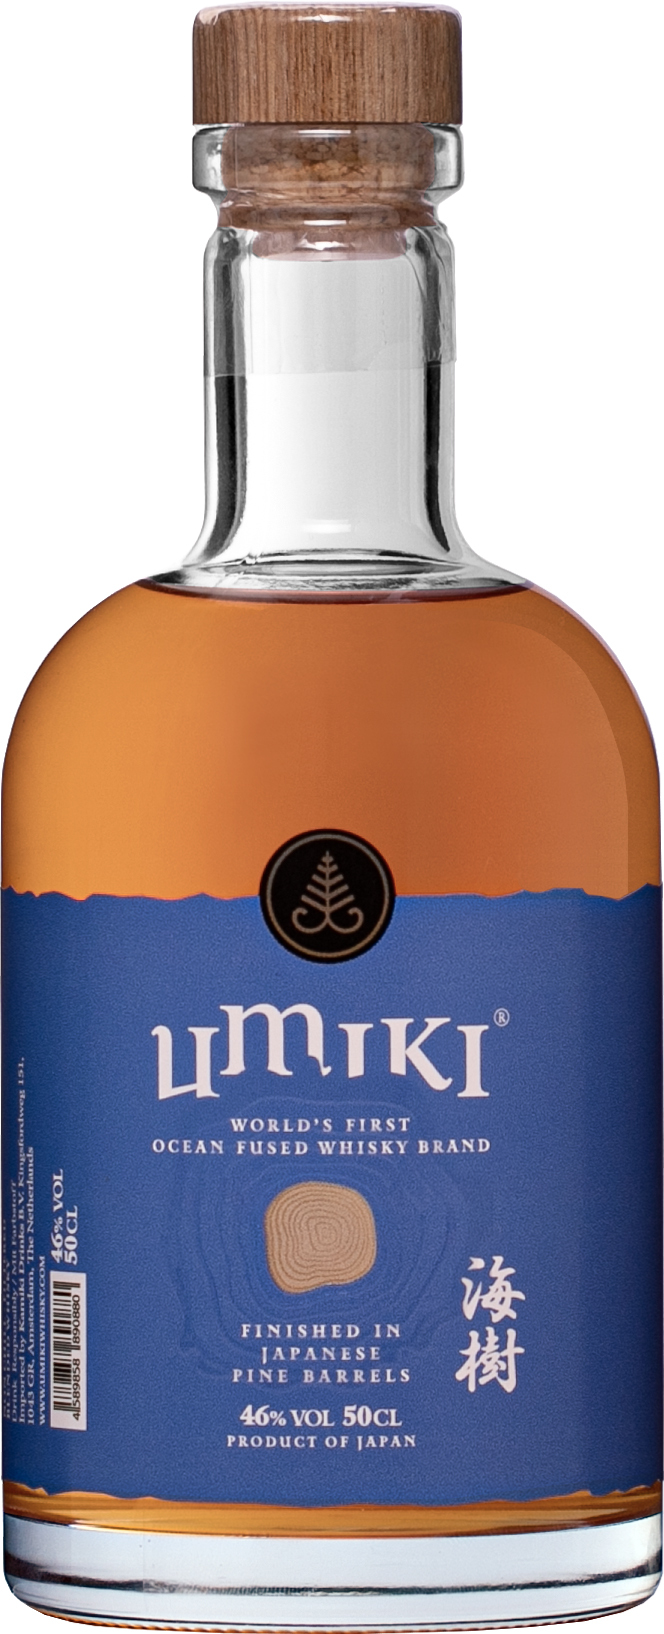 Umiki Whisky 46% 0,5l